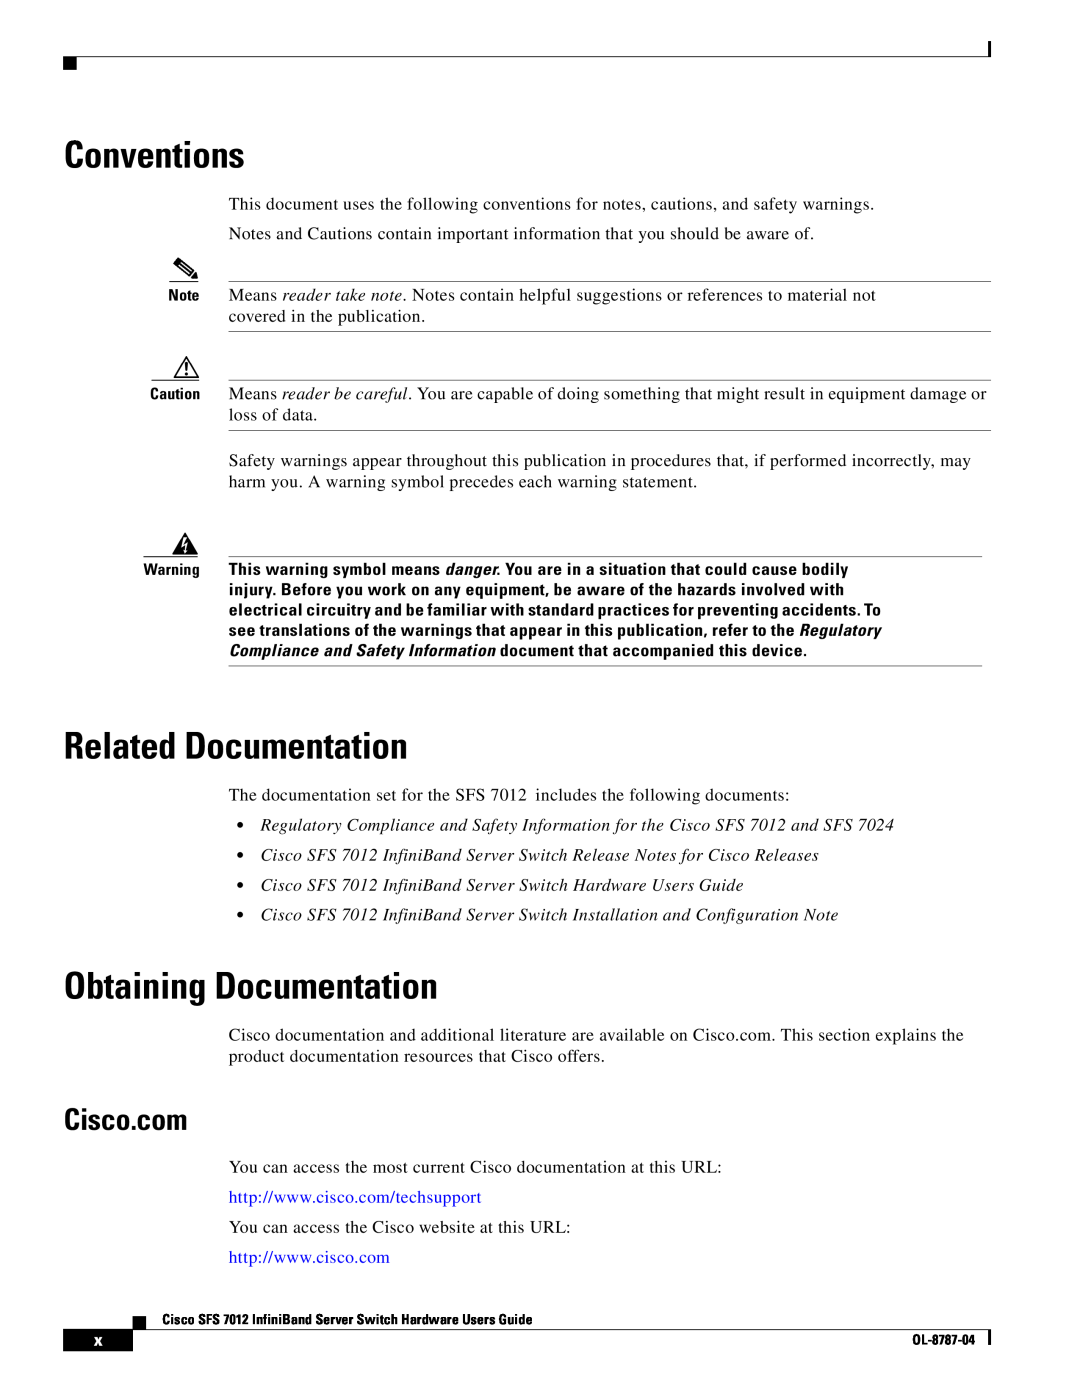 Cisco Systems SFS 7012 manual Conventions, Related Documentation, Obtaining Documentation, Cisco.com 